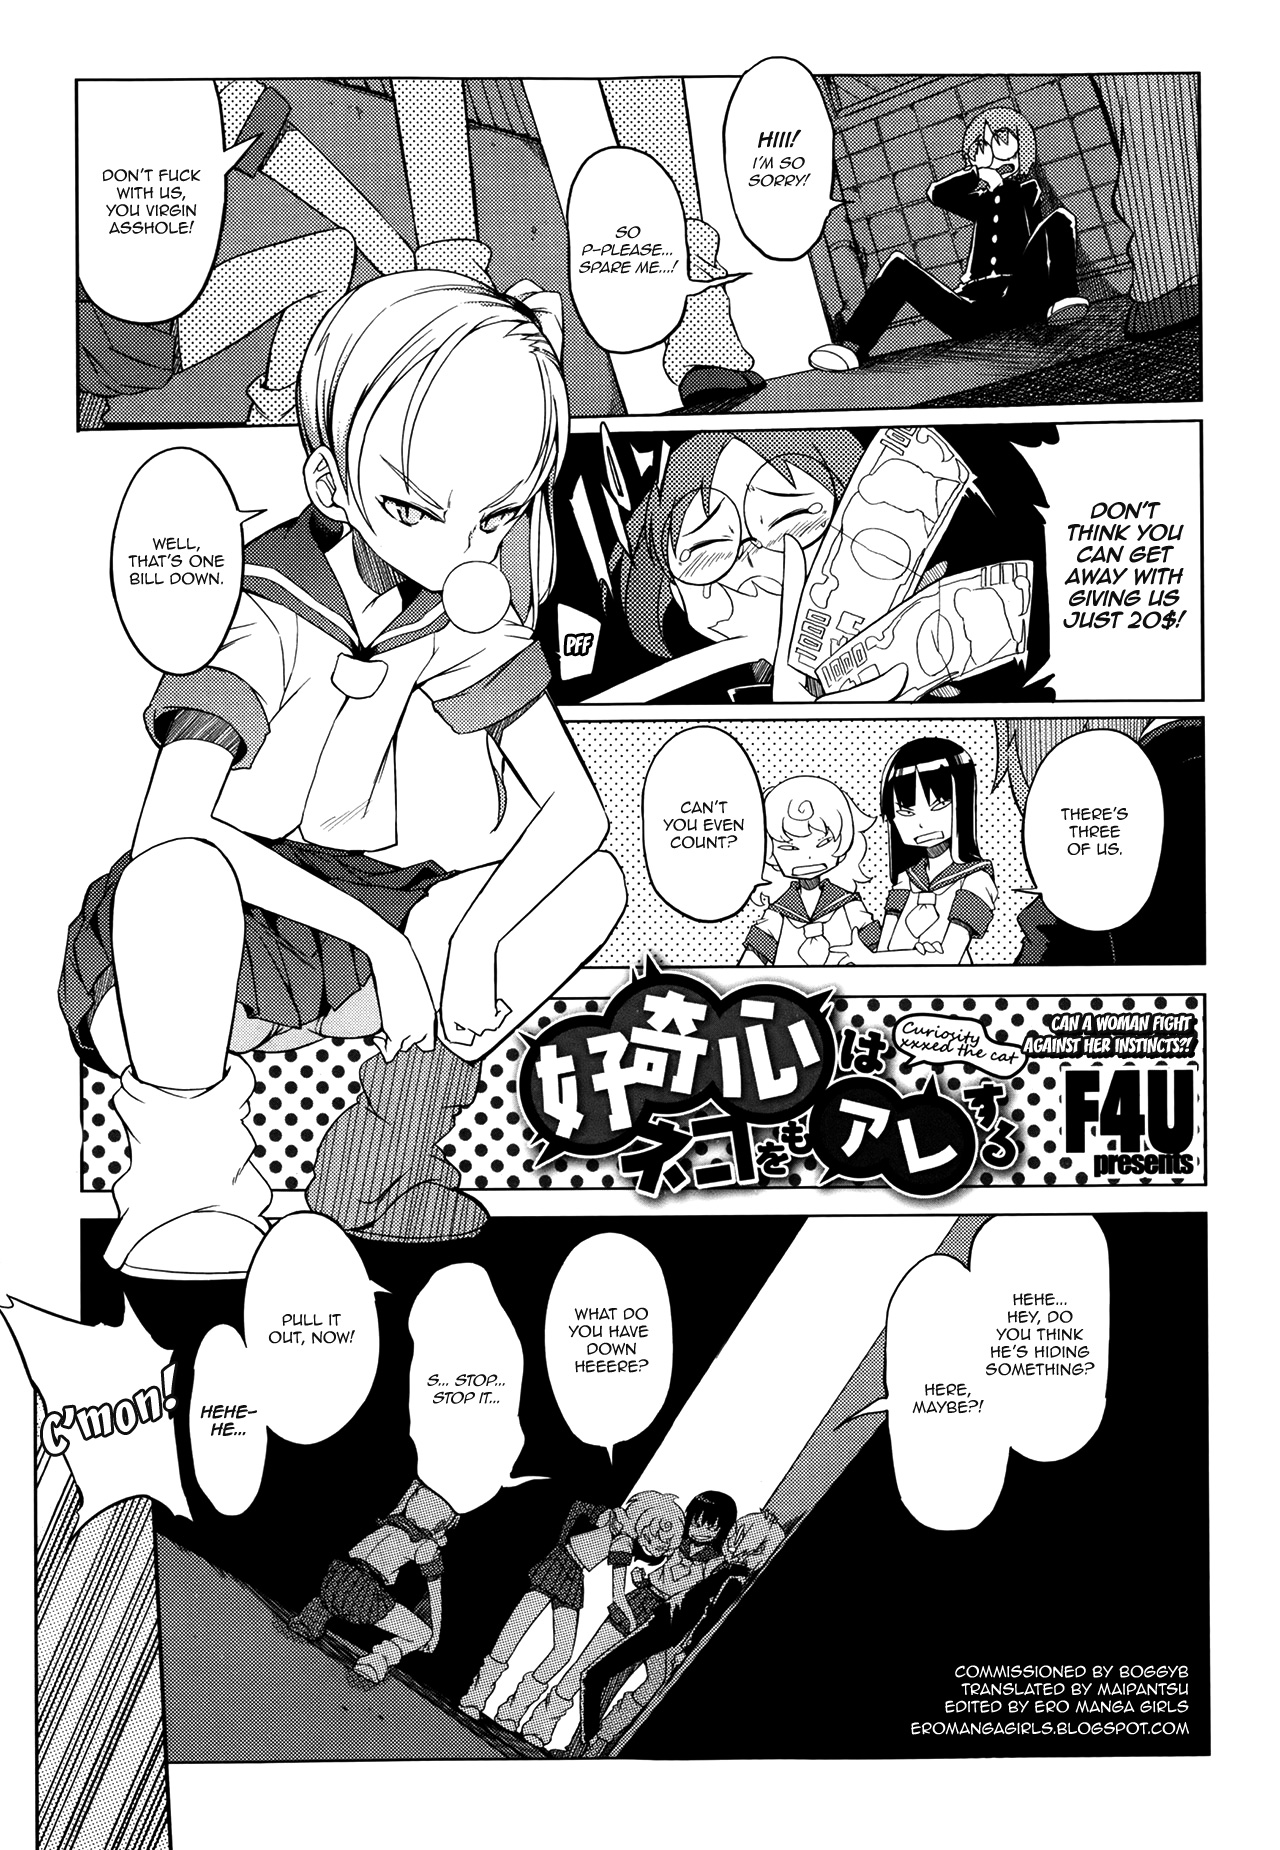 [F4U] Curiosity xxxed the cat + Outro (Original) [English] =BoggyB + maipantsu + Ero Manga Girls= page 1 full